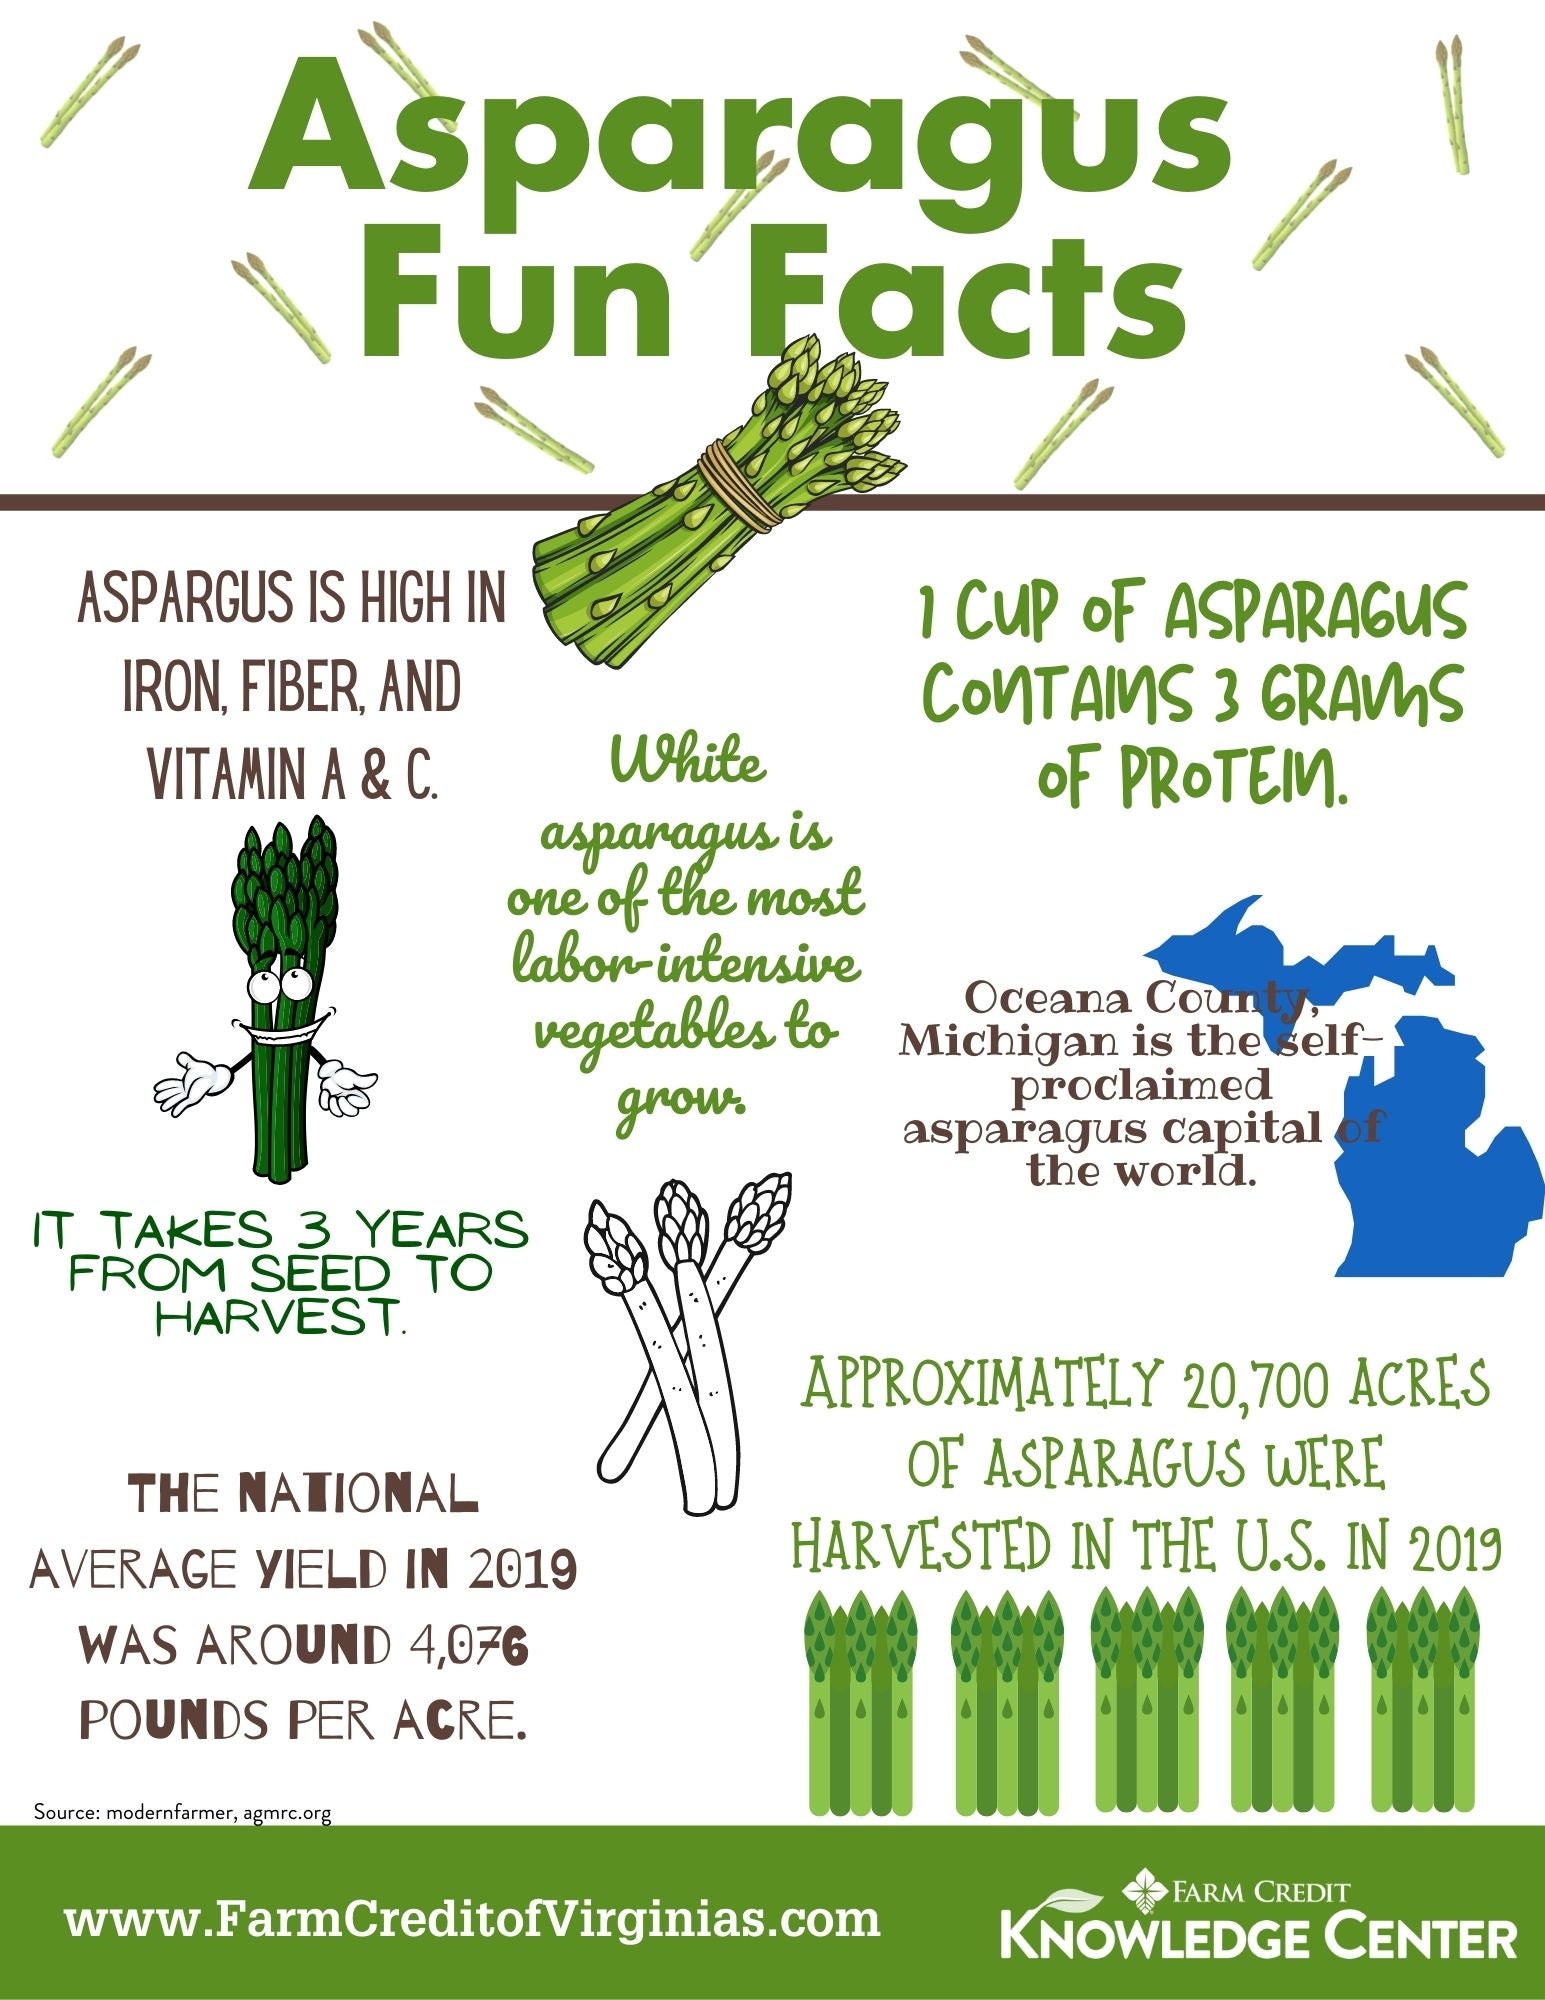 How to grow asparagus for asparagus farms